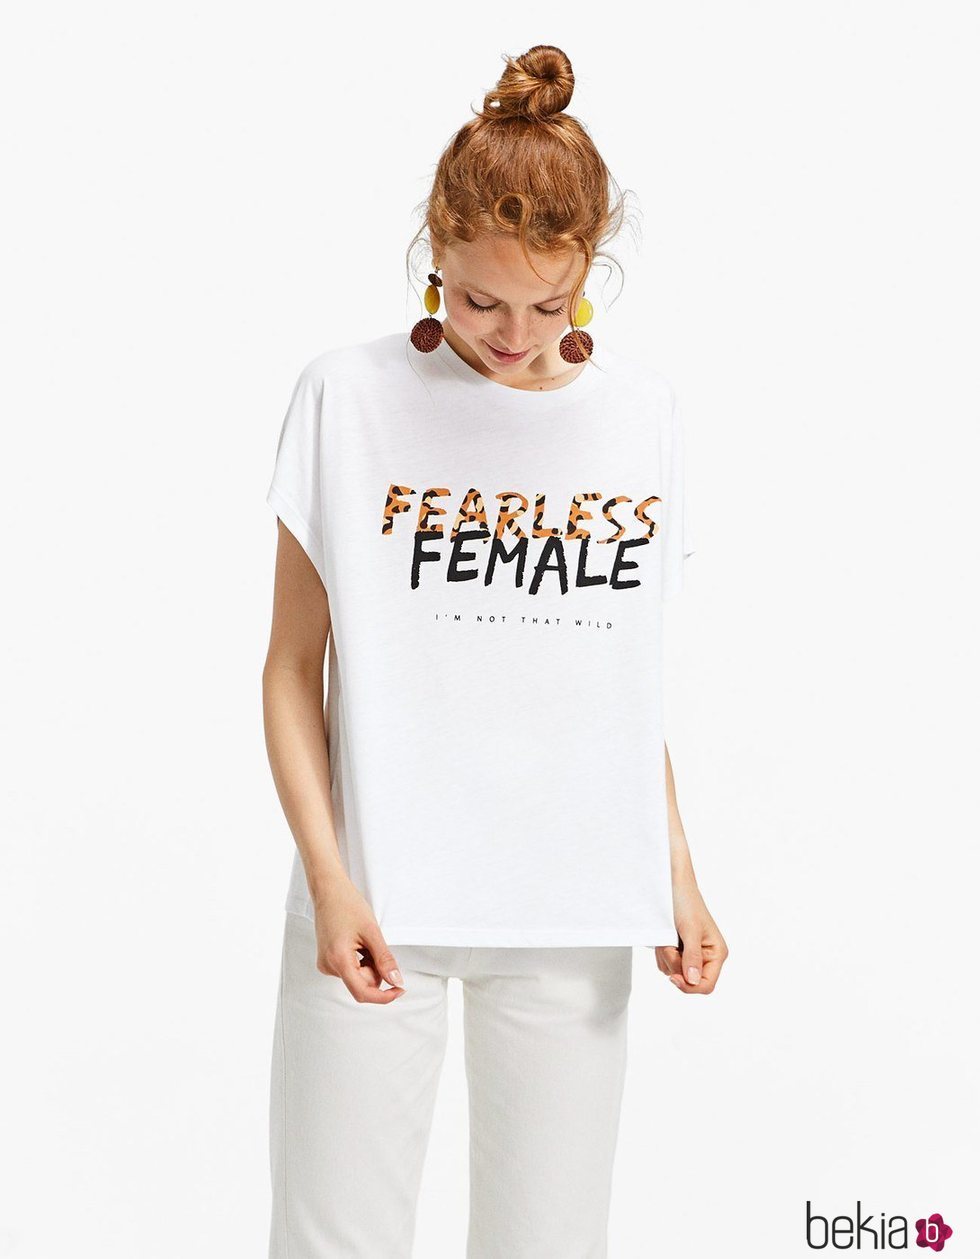 Camiseta 'Fearless Female' de la nueva colección primavera/verano 2018 de Stradivarius